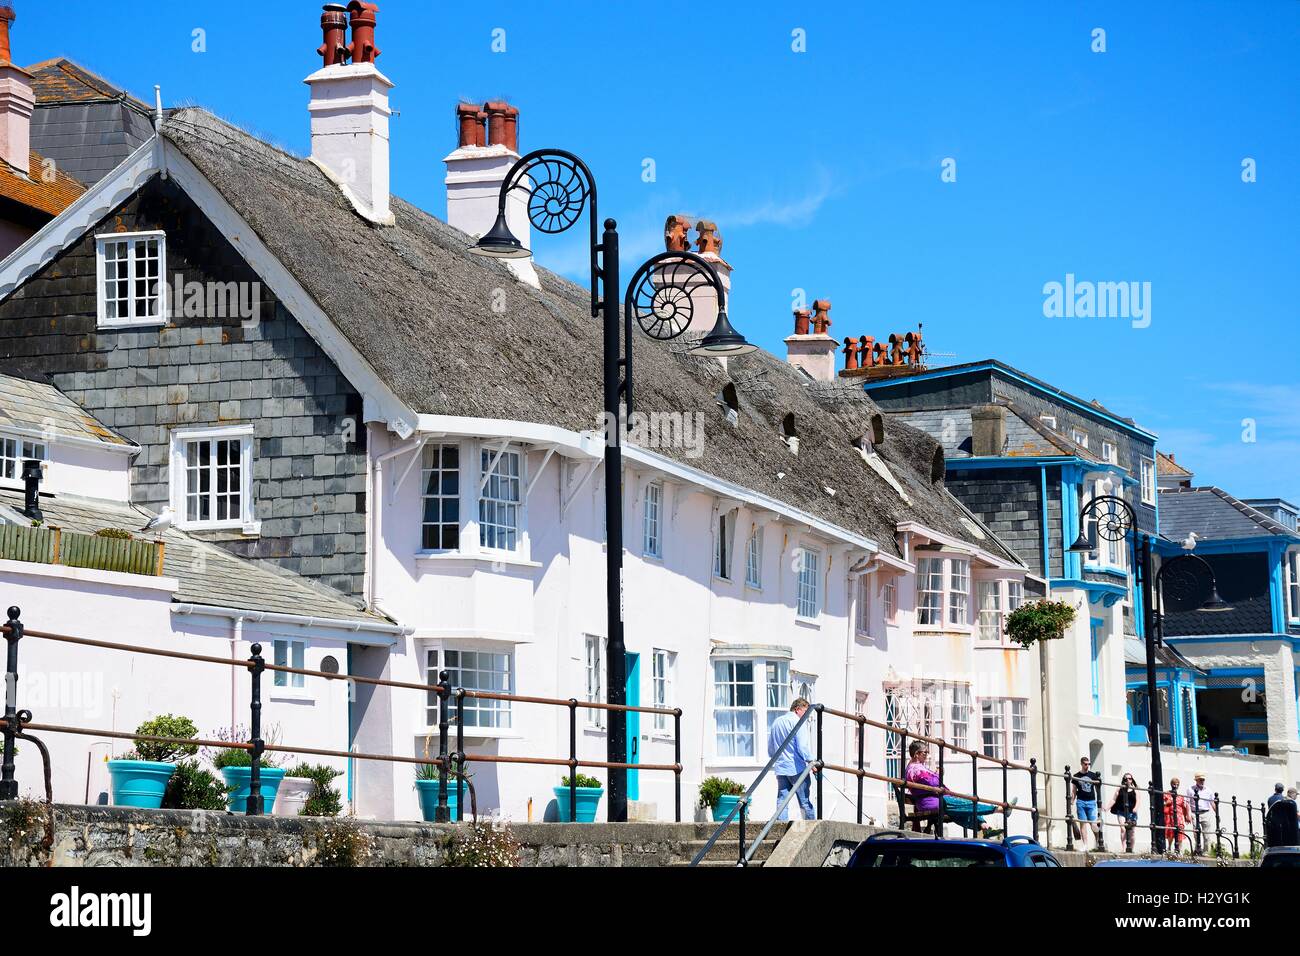 Bâtiments le long de la promenade avec l'ammonite décorées de réverbères, Lyme Regis, dans le Dorset, Angleterre, Royaume-Uni, Europe de l'Ouest. Banque D'Images